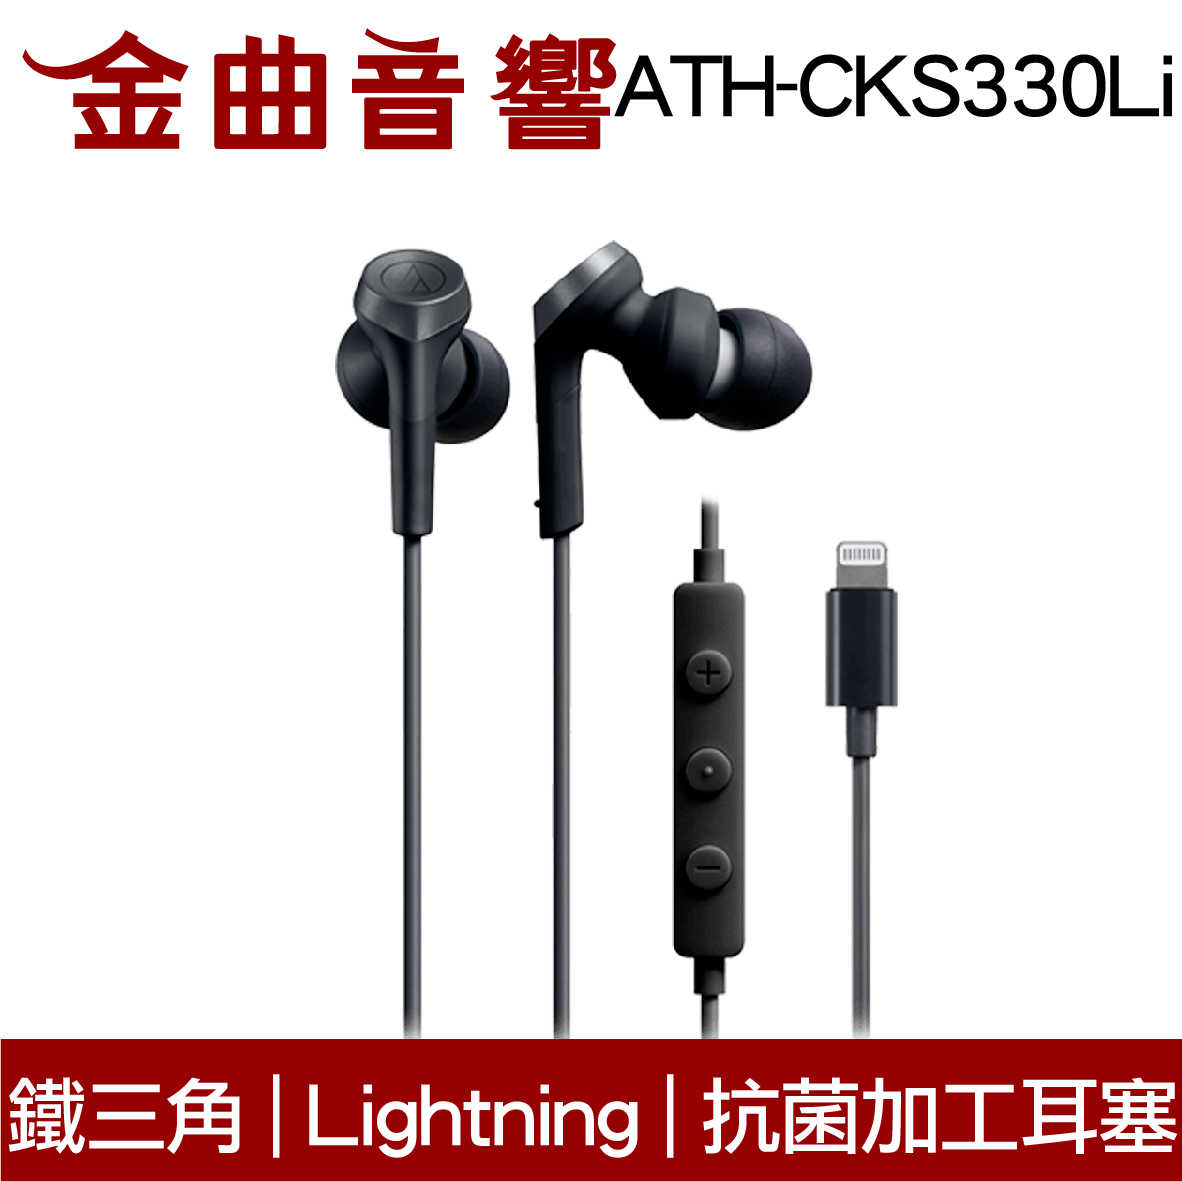 鐵三角 ATH-CKS330Li 黑色 抗菌加工耳塞 Lightning端子 重低音 耳塞式 耳機 | 金曲音響